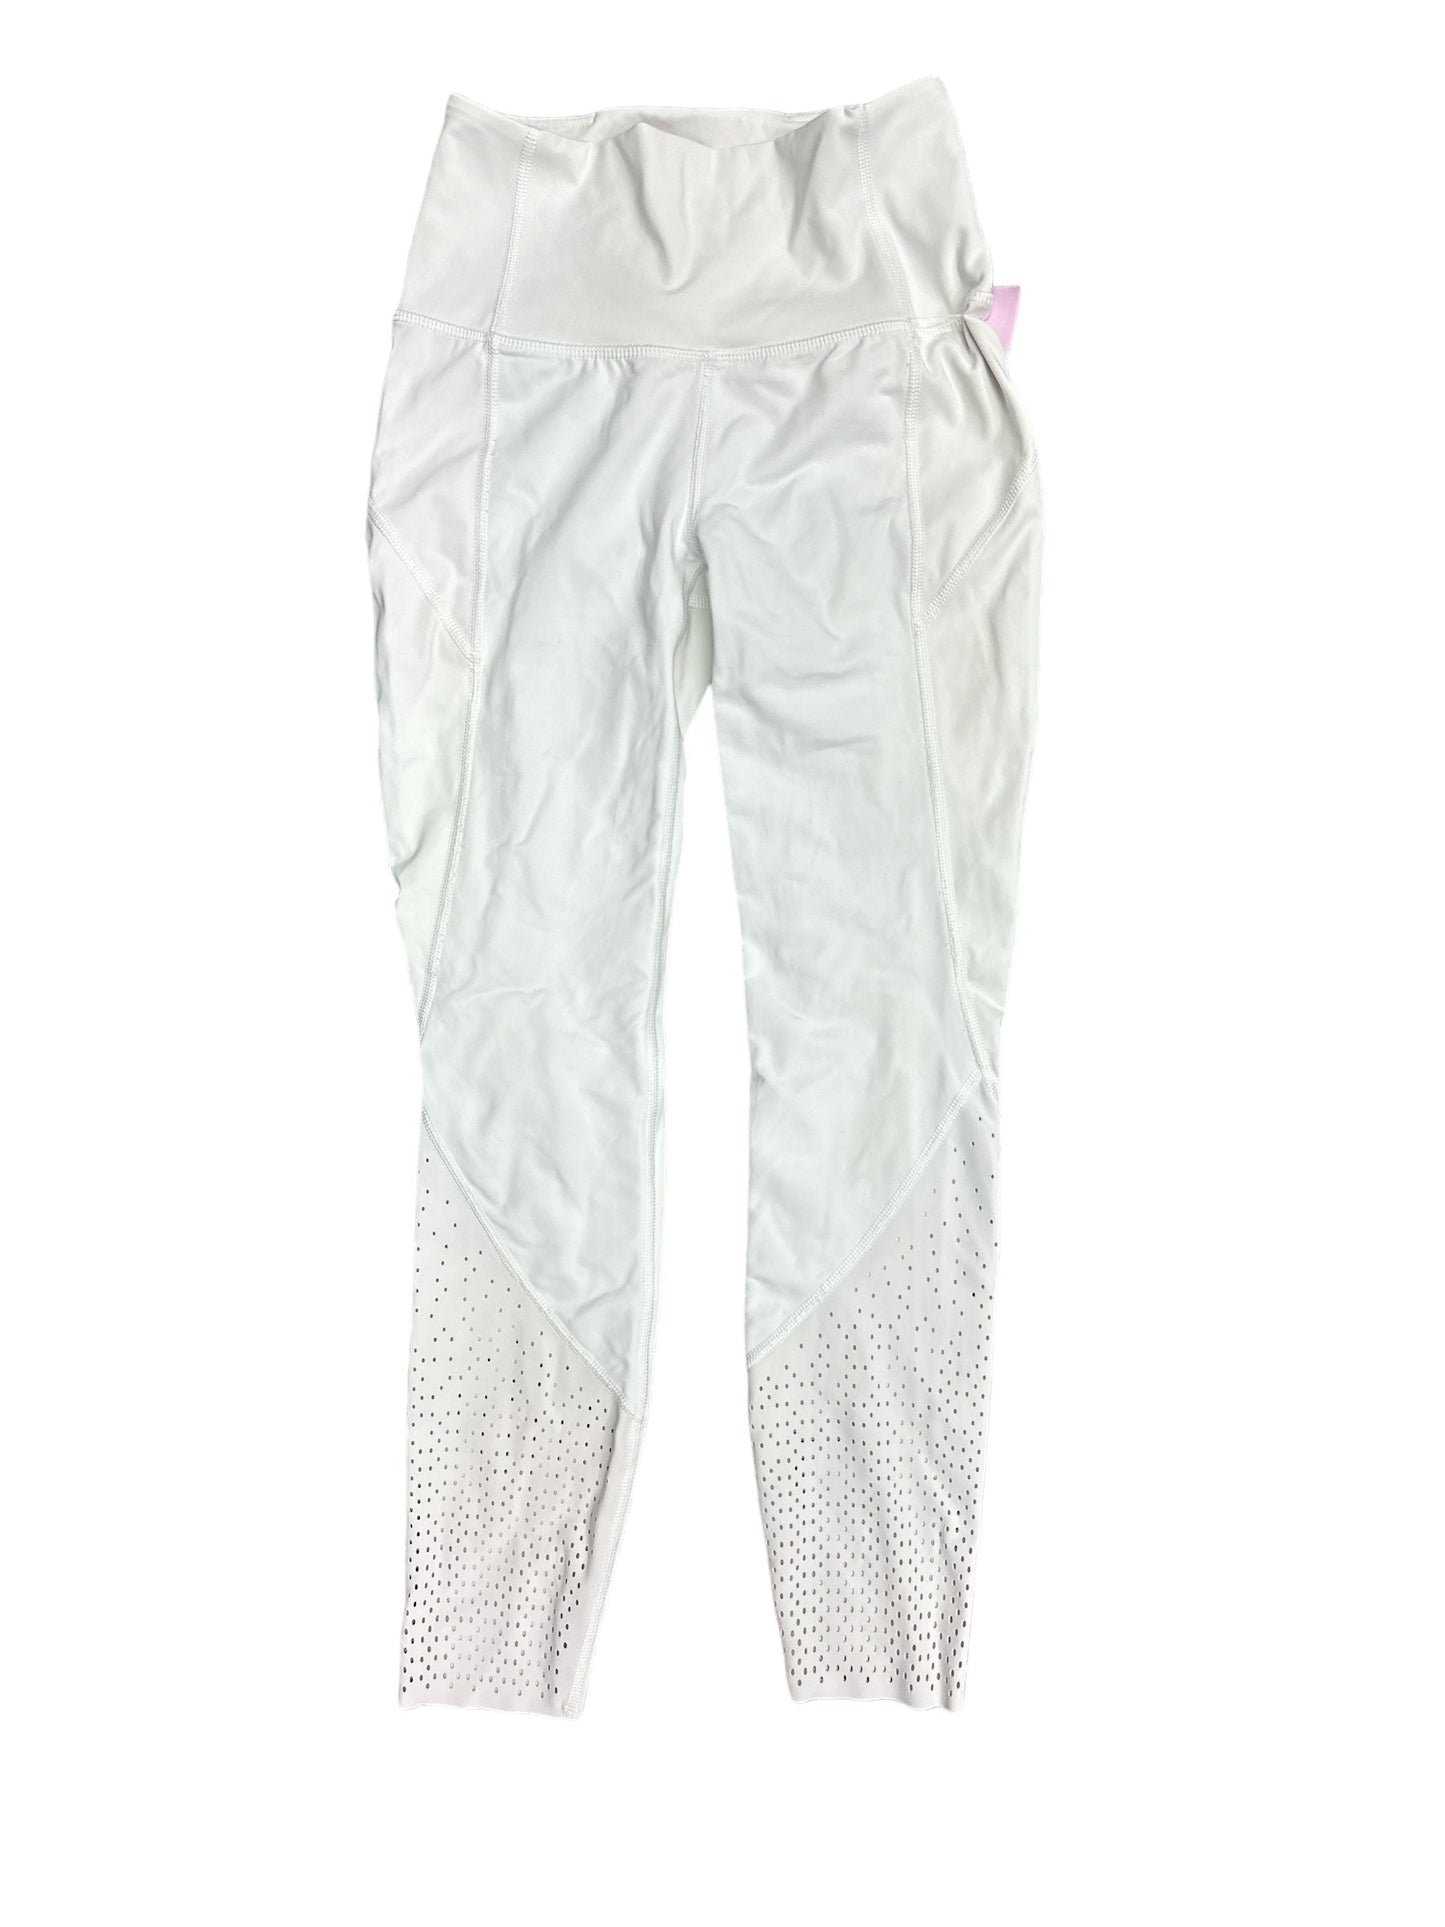 White Athletic Pants Lululemon, Size S